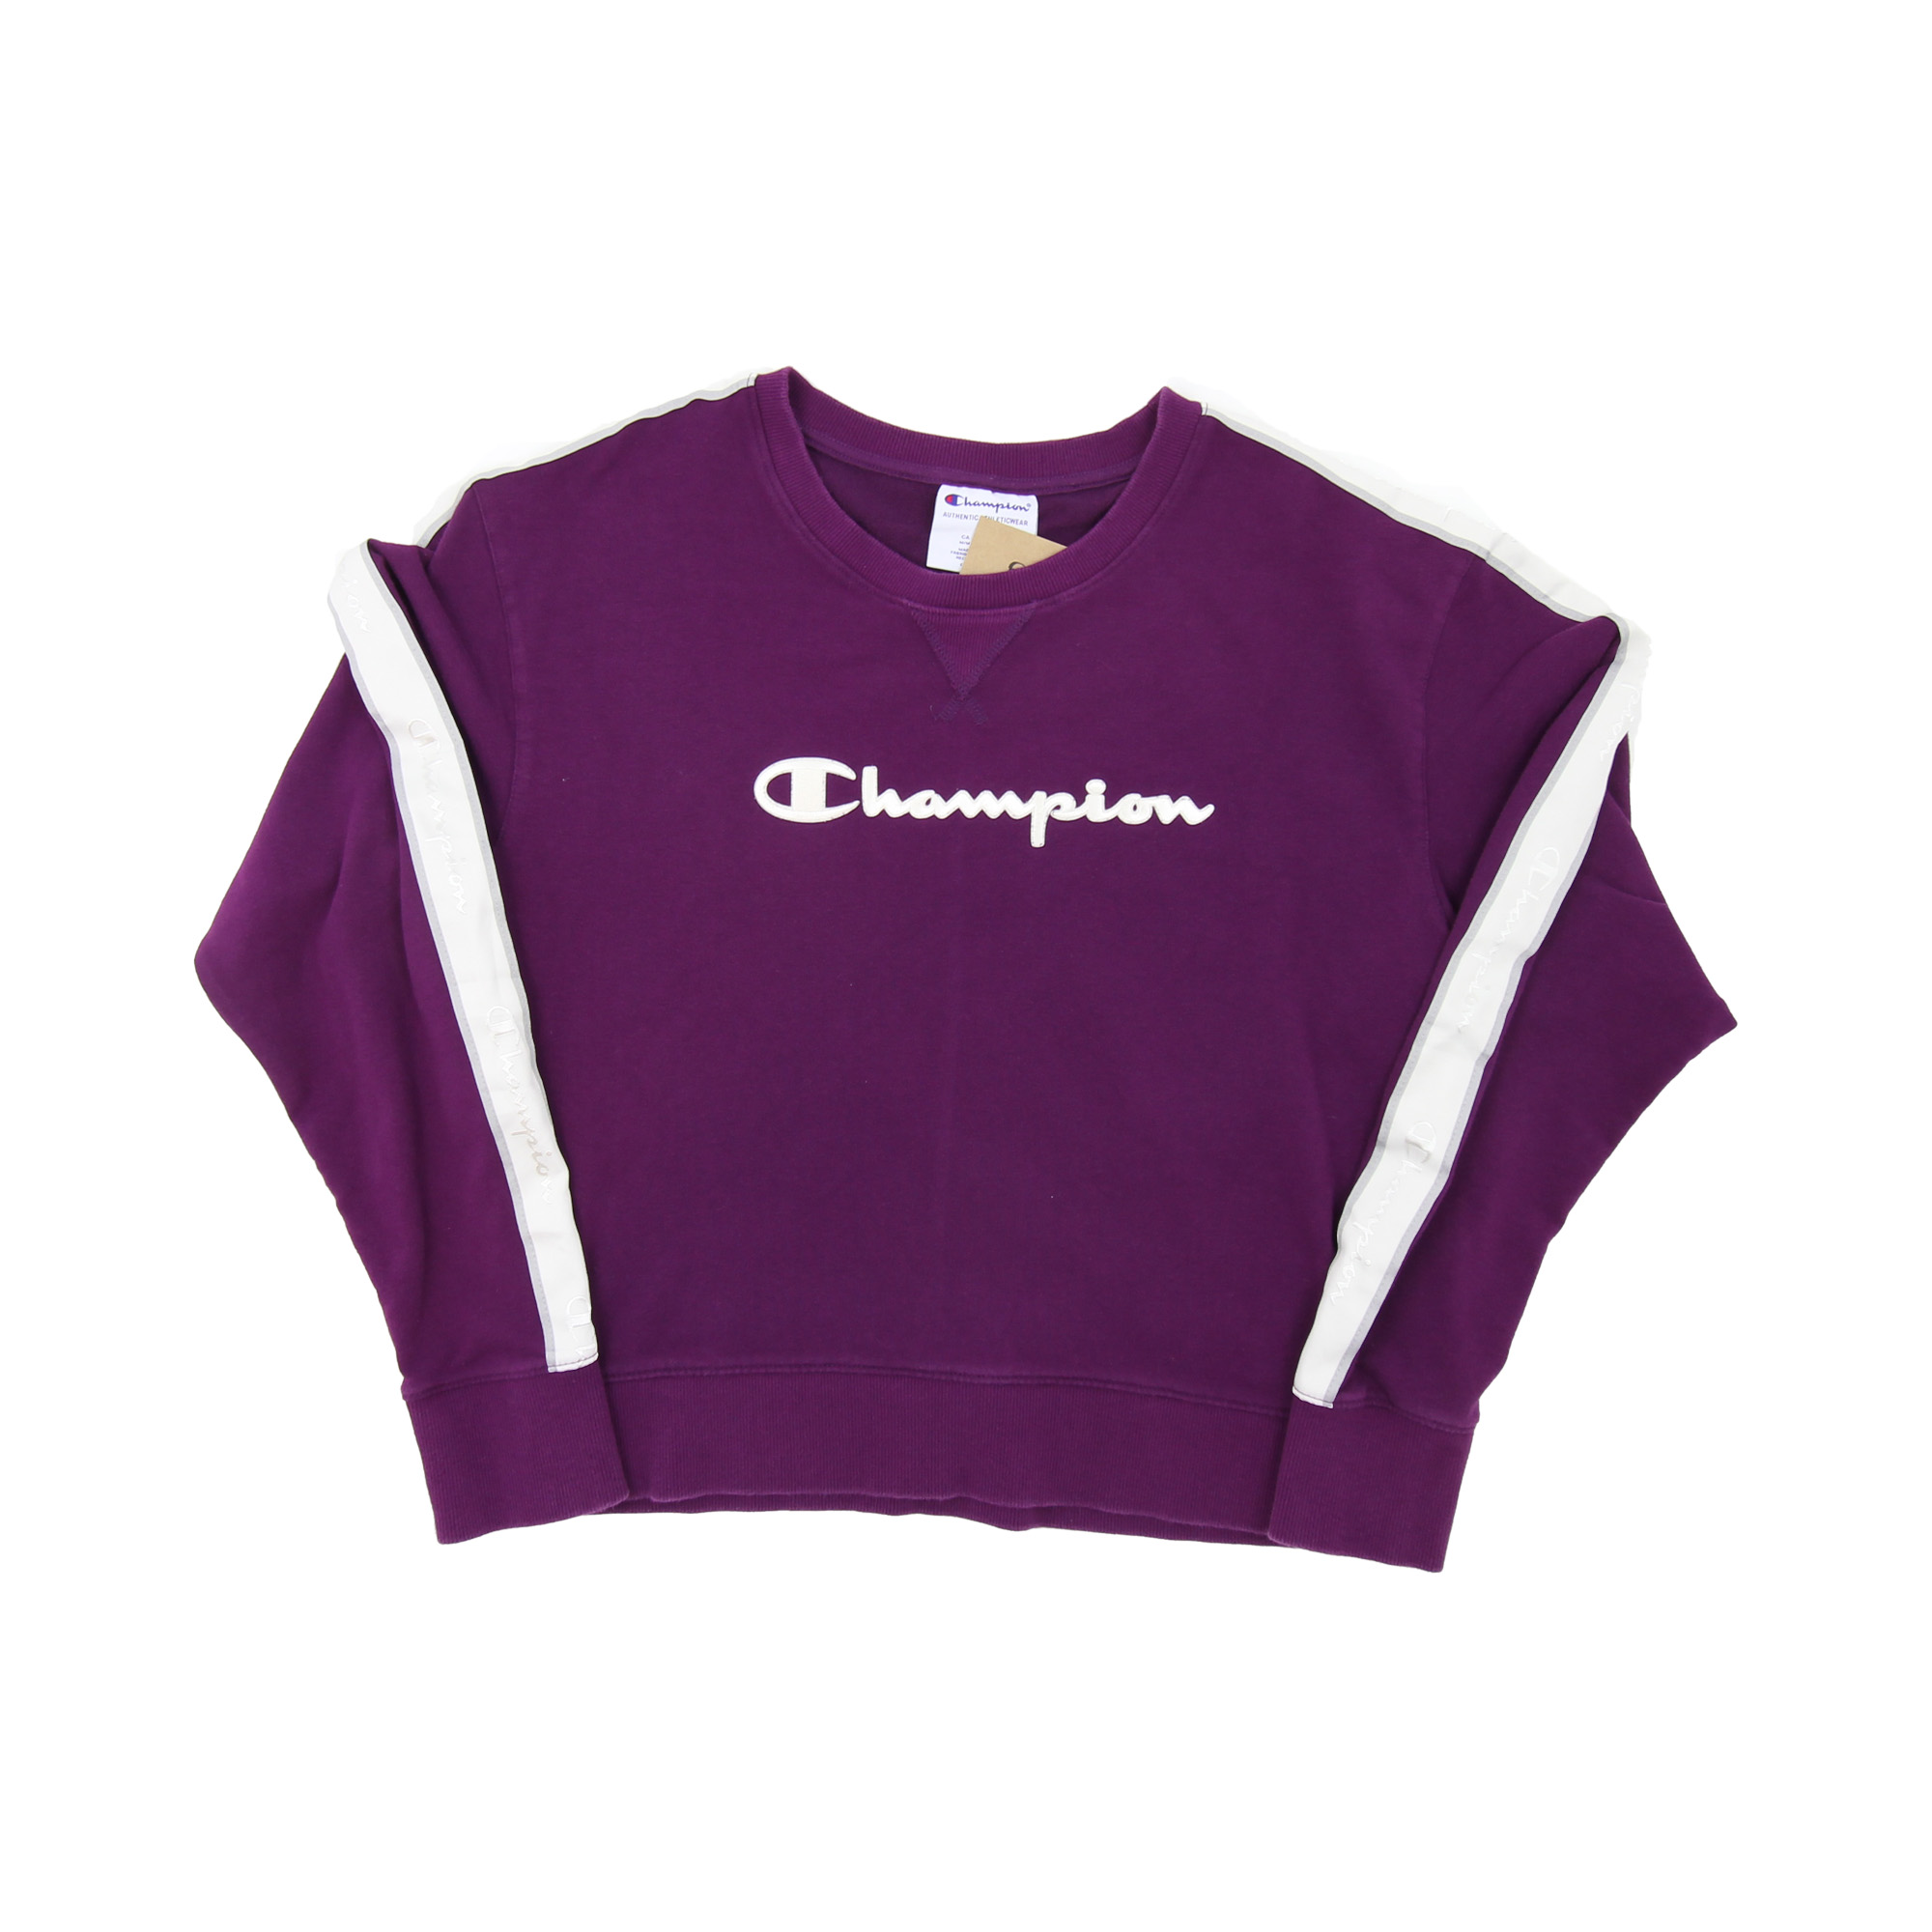 Champion Sweatshirt - Women's M